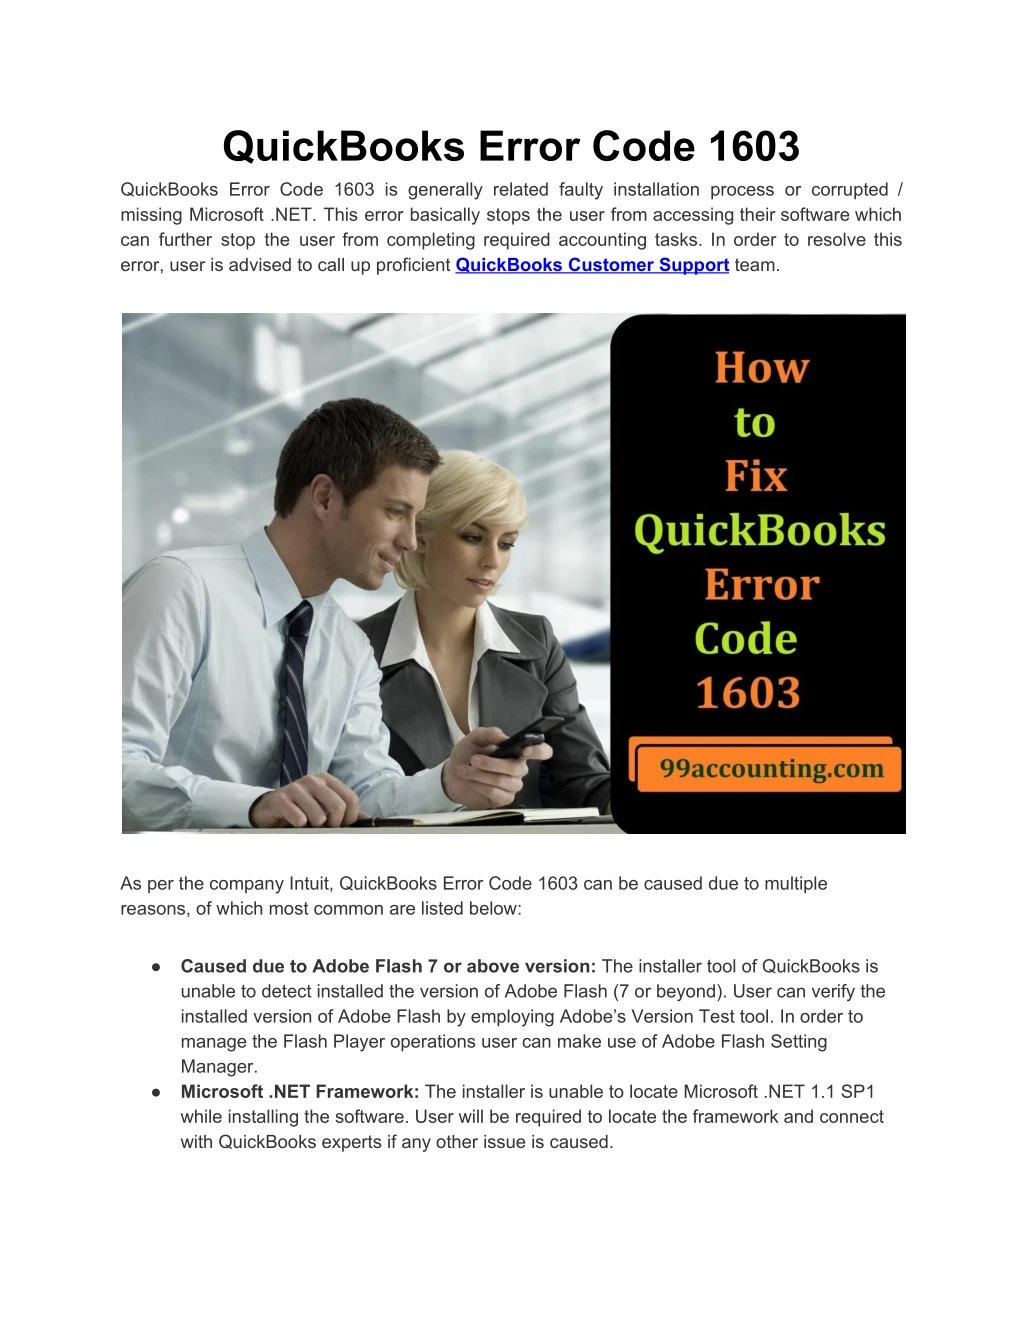 quickbooks error code 1603